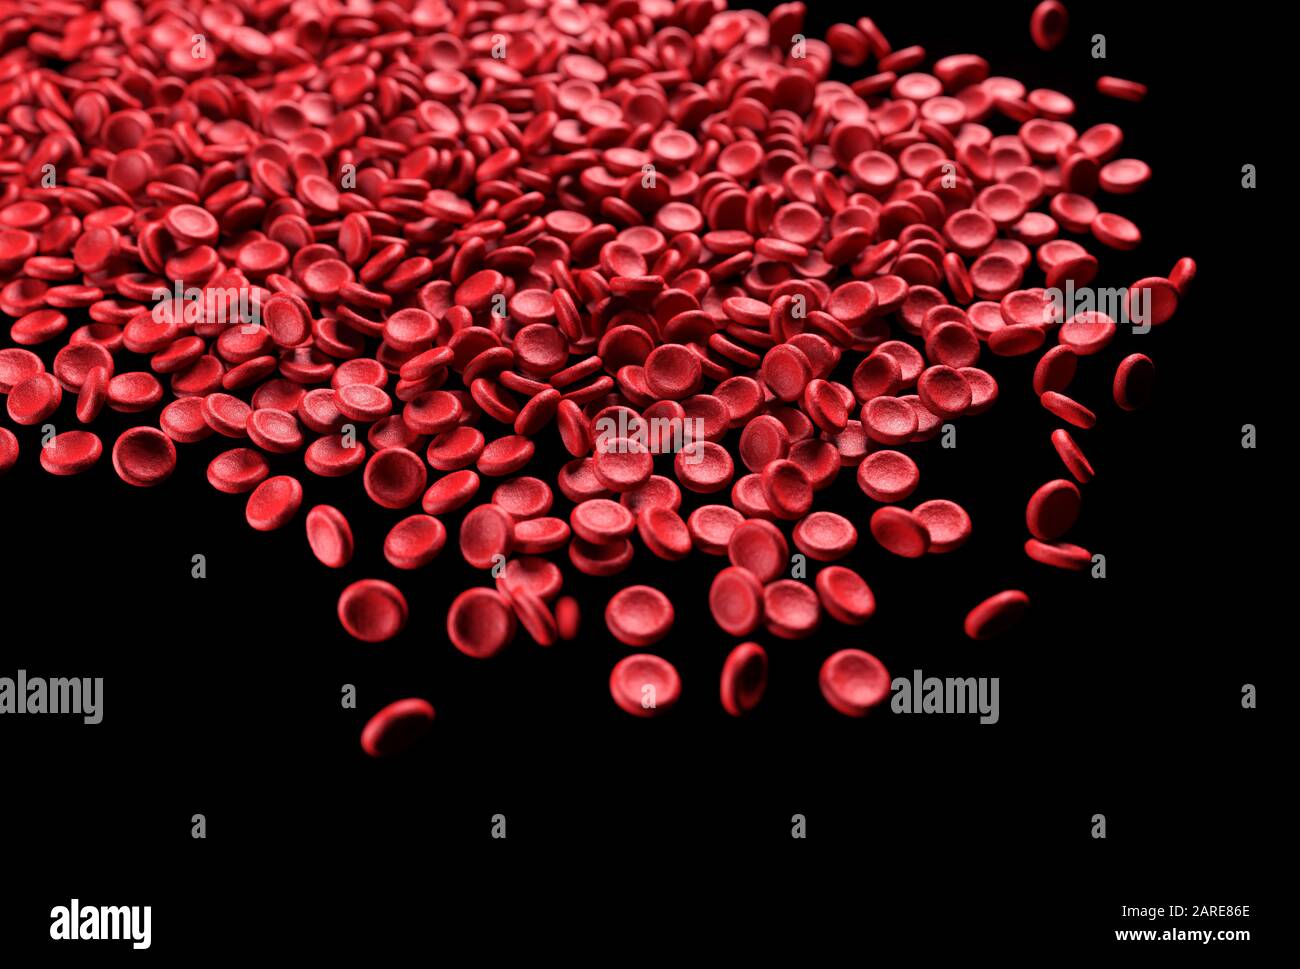 Les globules rouges débordent sur fond noir. Illustration tridimensionnelle, image conceptuelle. Banque D'Images